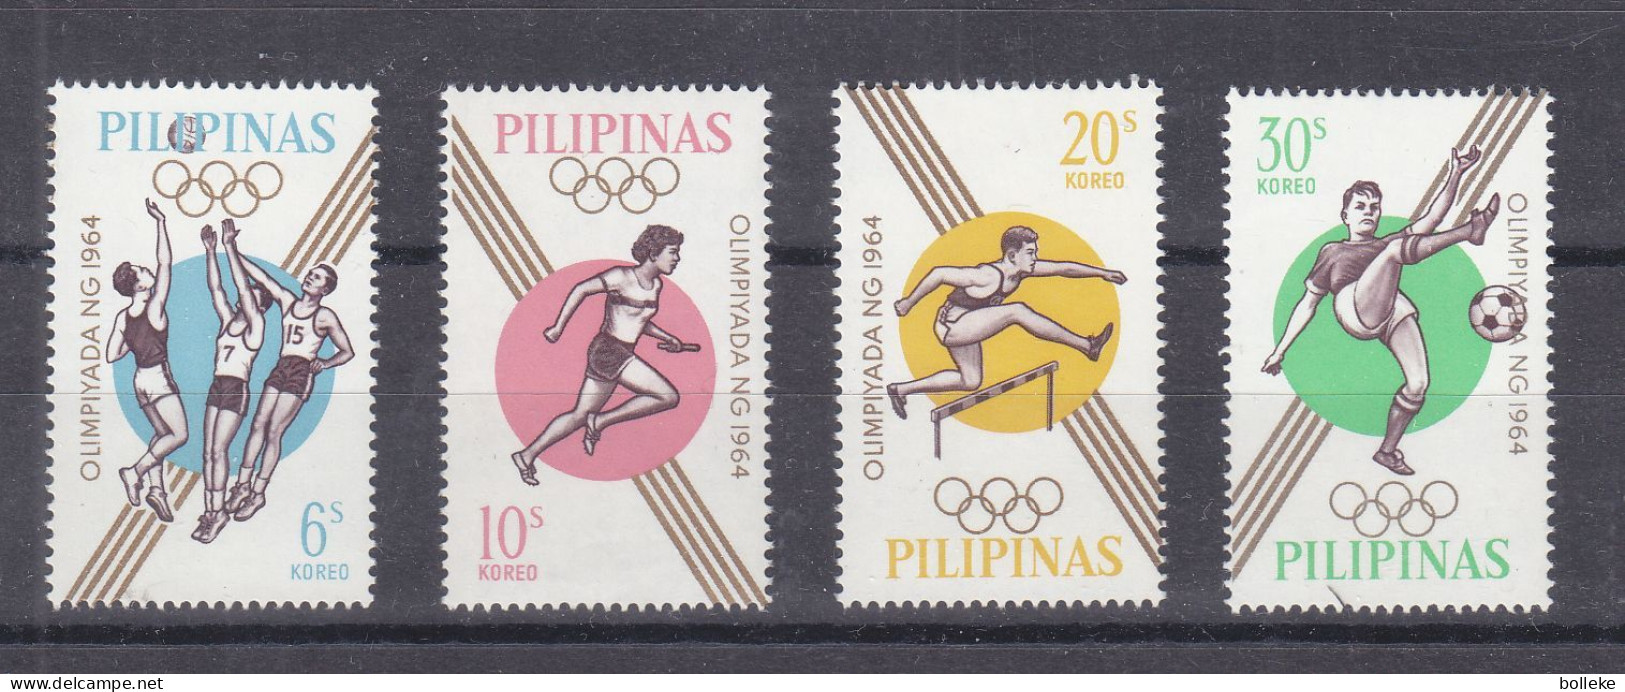 Jeux Oyimpiques - Tokyo 64 - Philippines - Yvert 605 / 8 ** -basket Ball - Haies - Football - Valeur 2,25 Euros - Estate 1964: Tokio